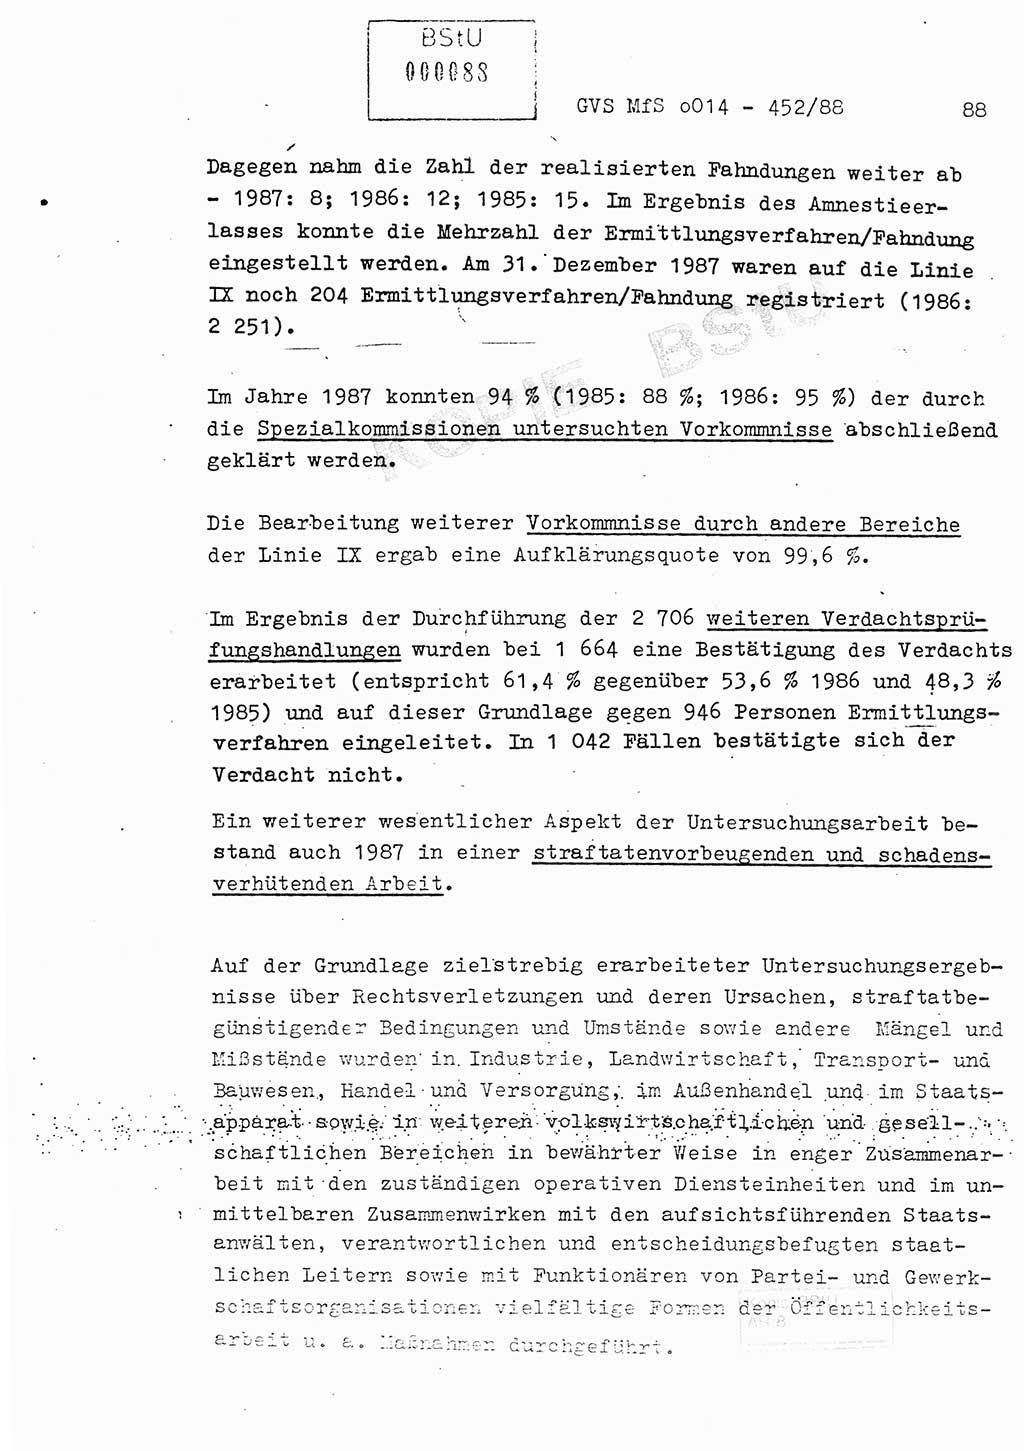 Jahresbericht der Hauptabteilung (HA) Ⅸ 1987, Einschätzung der Wirksamkeit der Untersuchungsarbeit im Jahre 1987, Ministerium für Staatssicherheit (MfS) der Deutschen Demokratischen Republik (DDR), Hauptabteilung Ⅸ, Geheime Verschlußsache (GVS) o014-452/88, Berlin 1988, Seite 88 (Einsch. MfS DDR HA Ⅸ GVS o014-452/88 1987, S. 88)